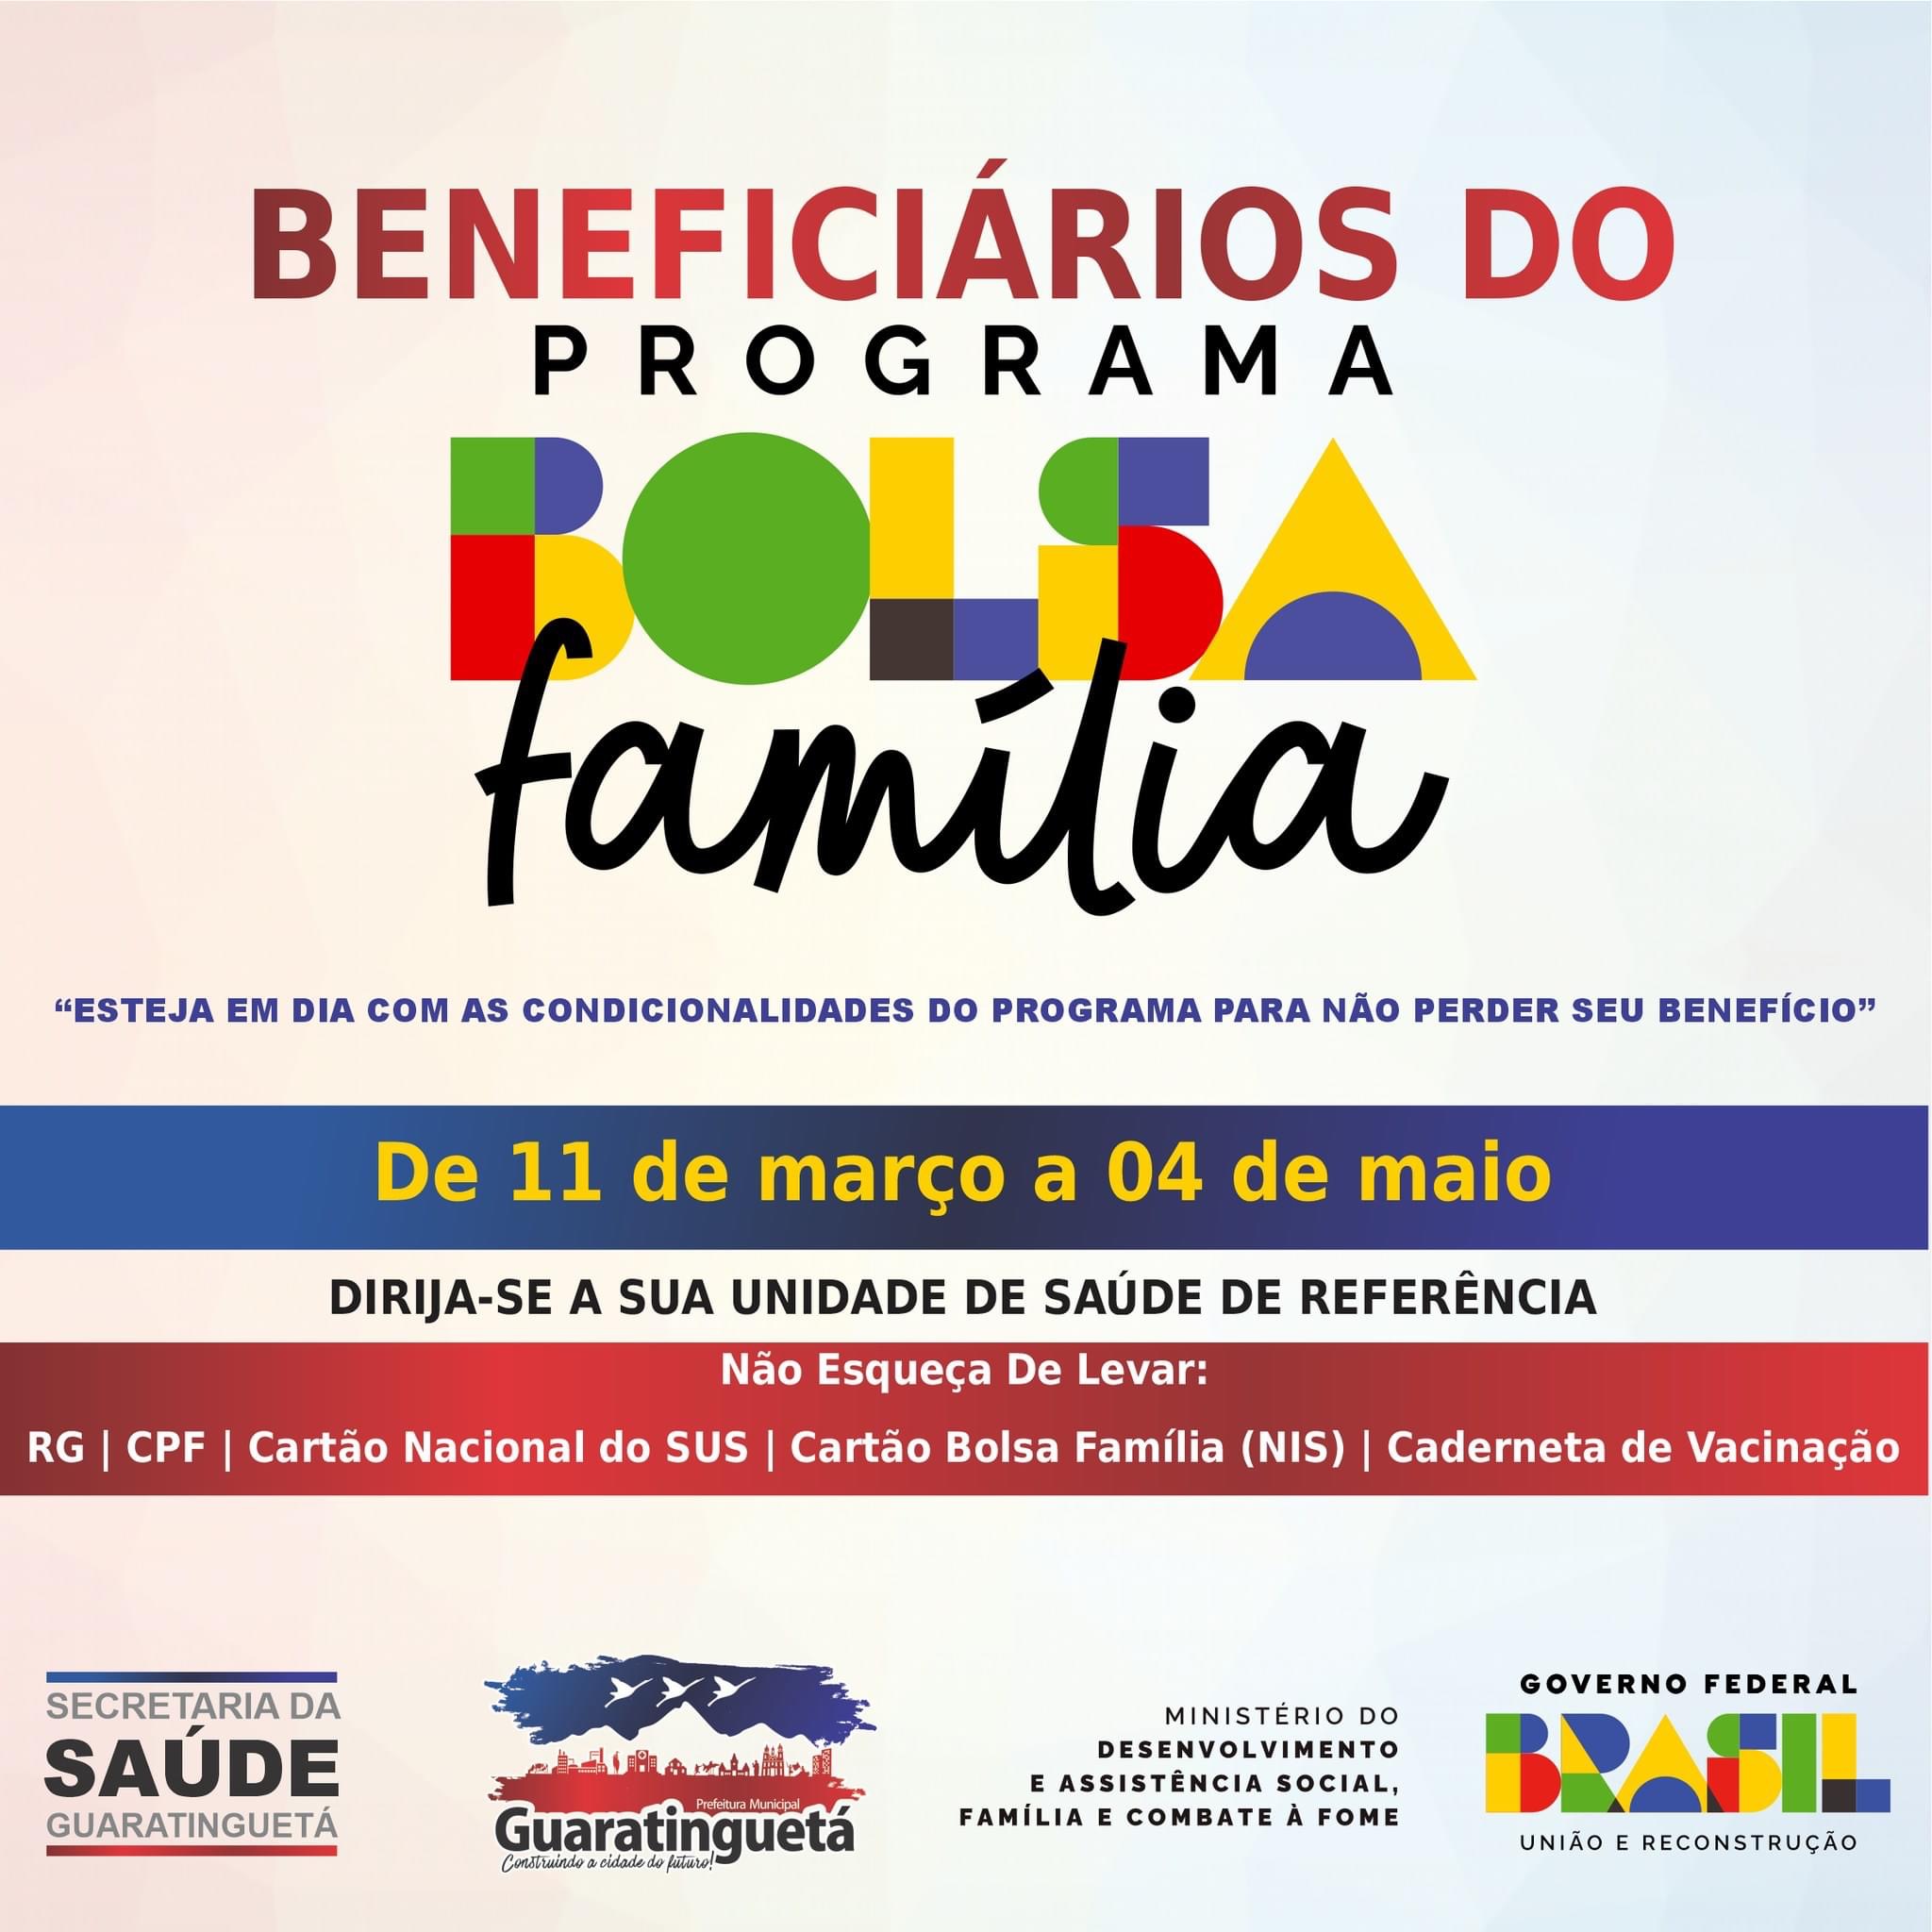 Guará avisa sobre prazo para acompanhamento de saúde dos beneficiários do Bolsa Família